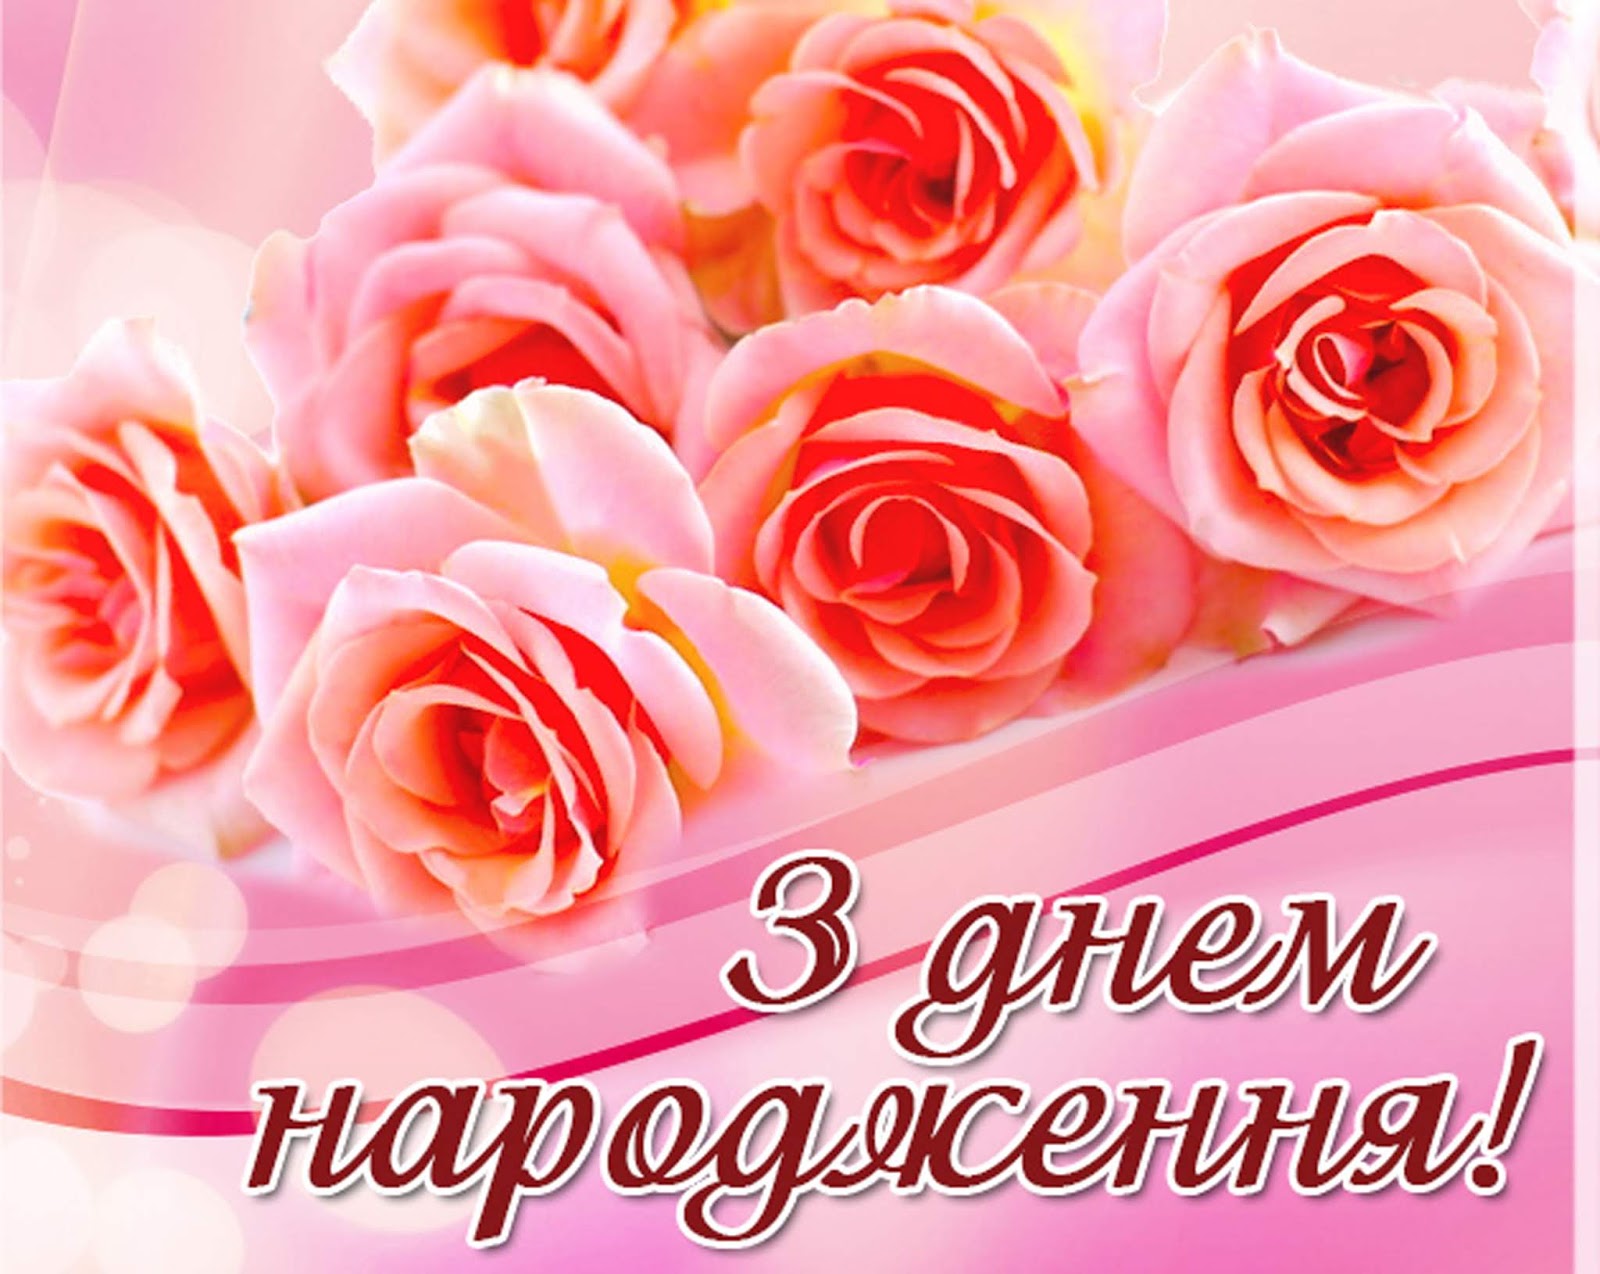 Листівки з днем народження. З днем народження. Вітаю з днем народження. З днем народження українською.